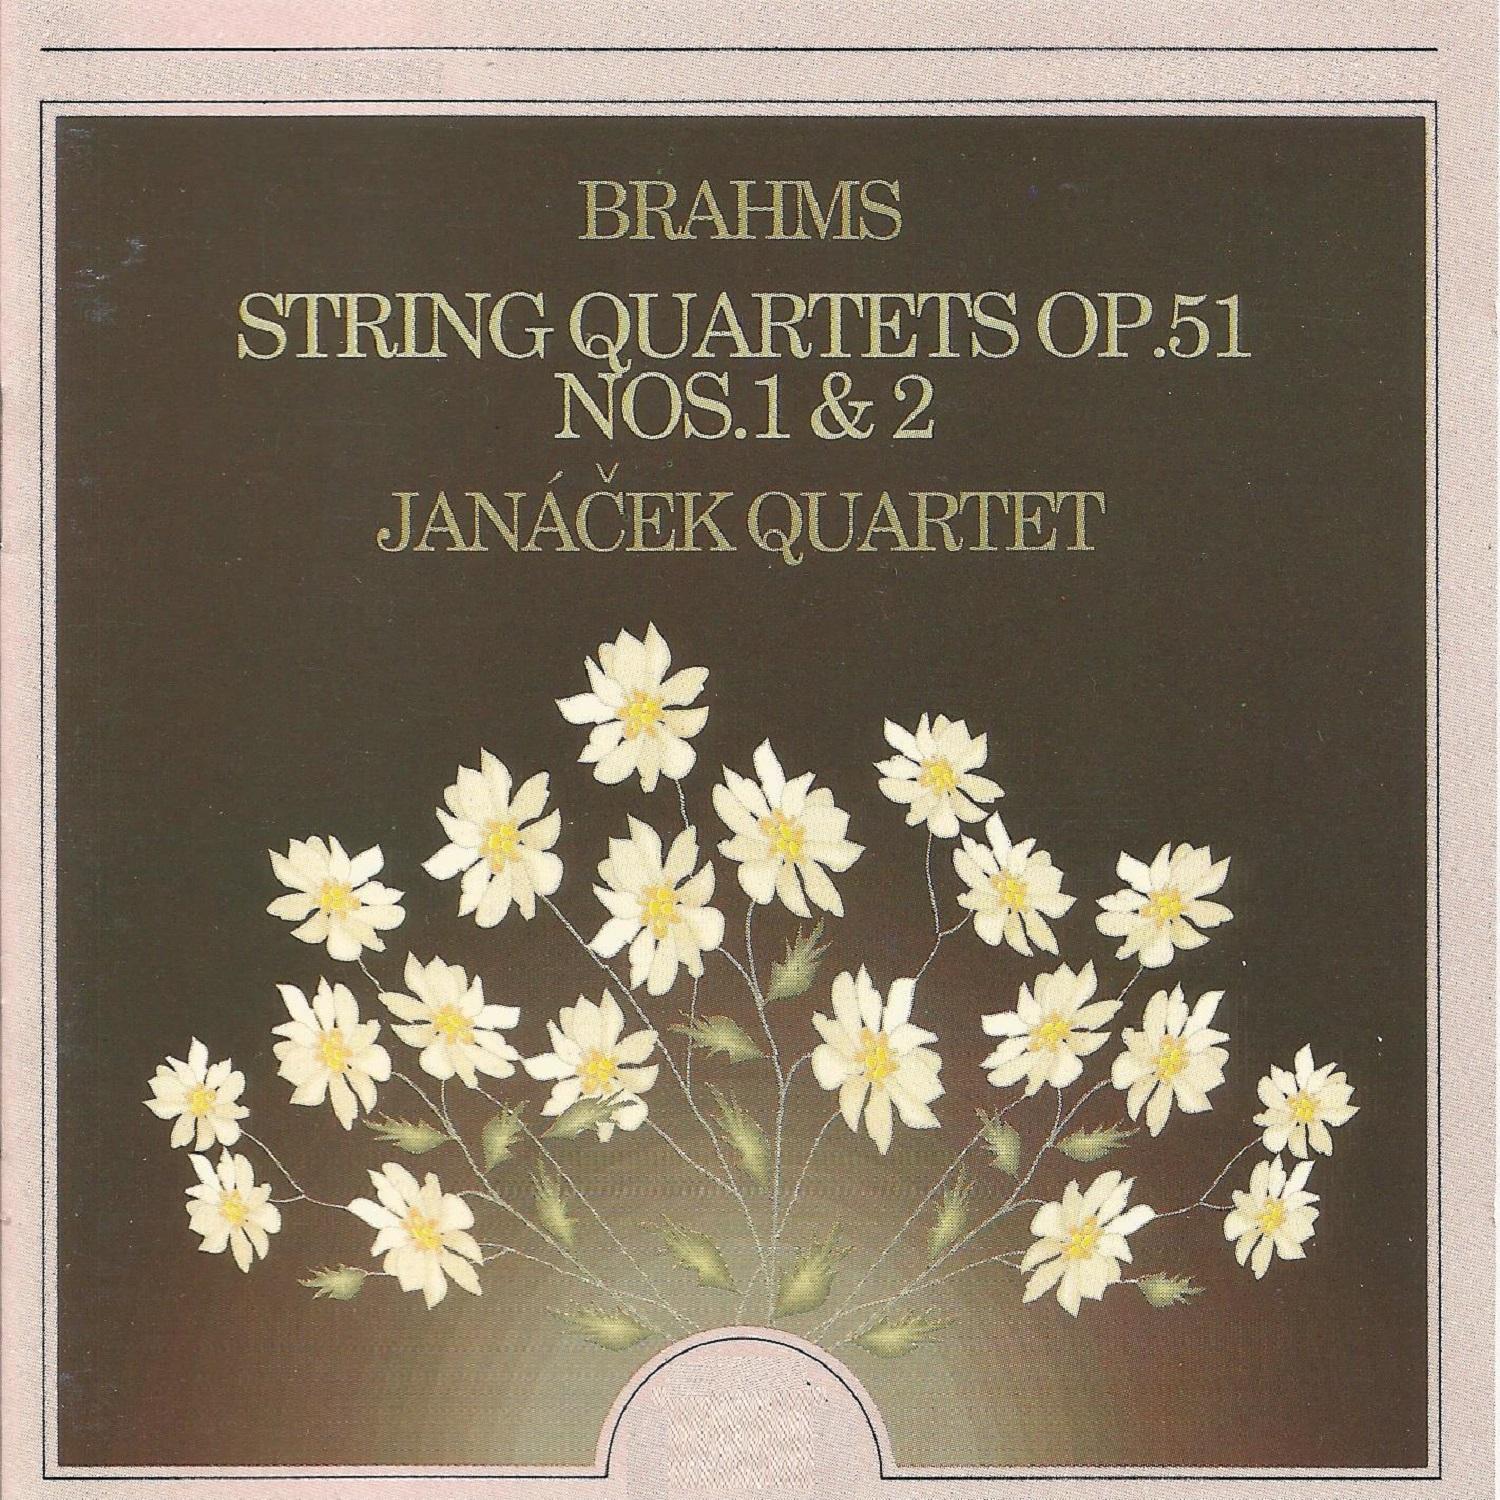 String Quartet No. 1 in C Minor, Op. 51 No. 1: III. Allegretto molto moderato e comodo